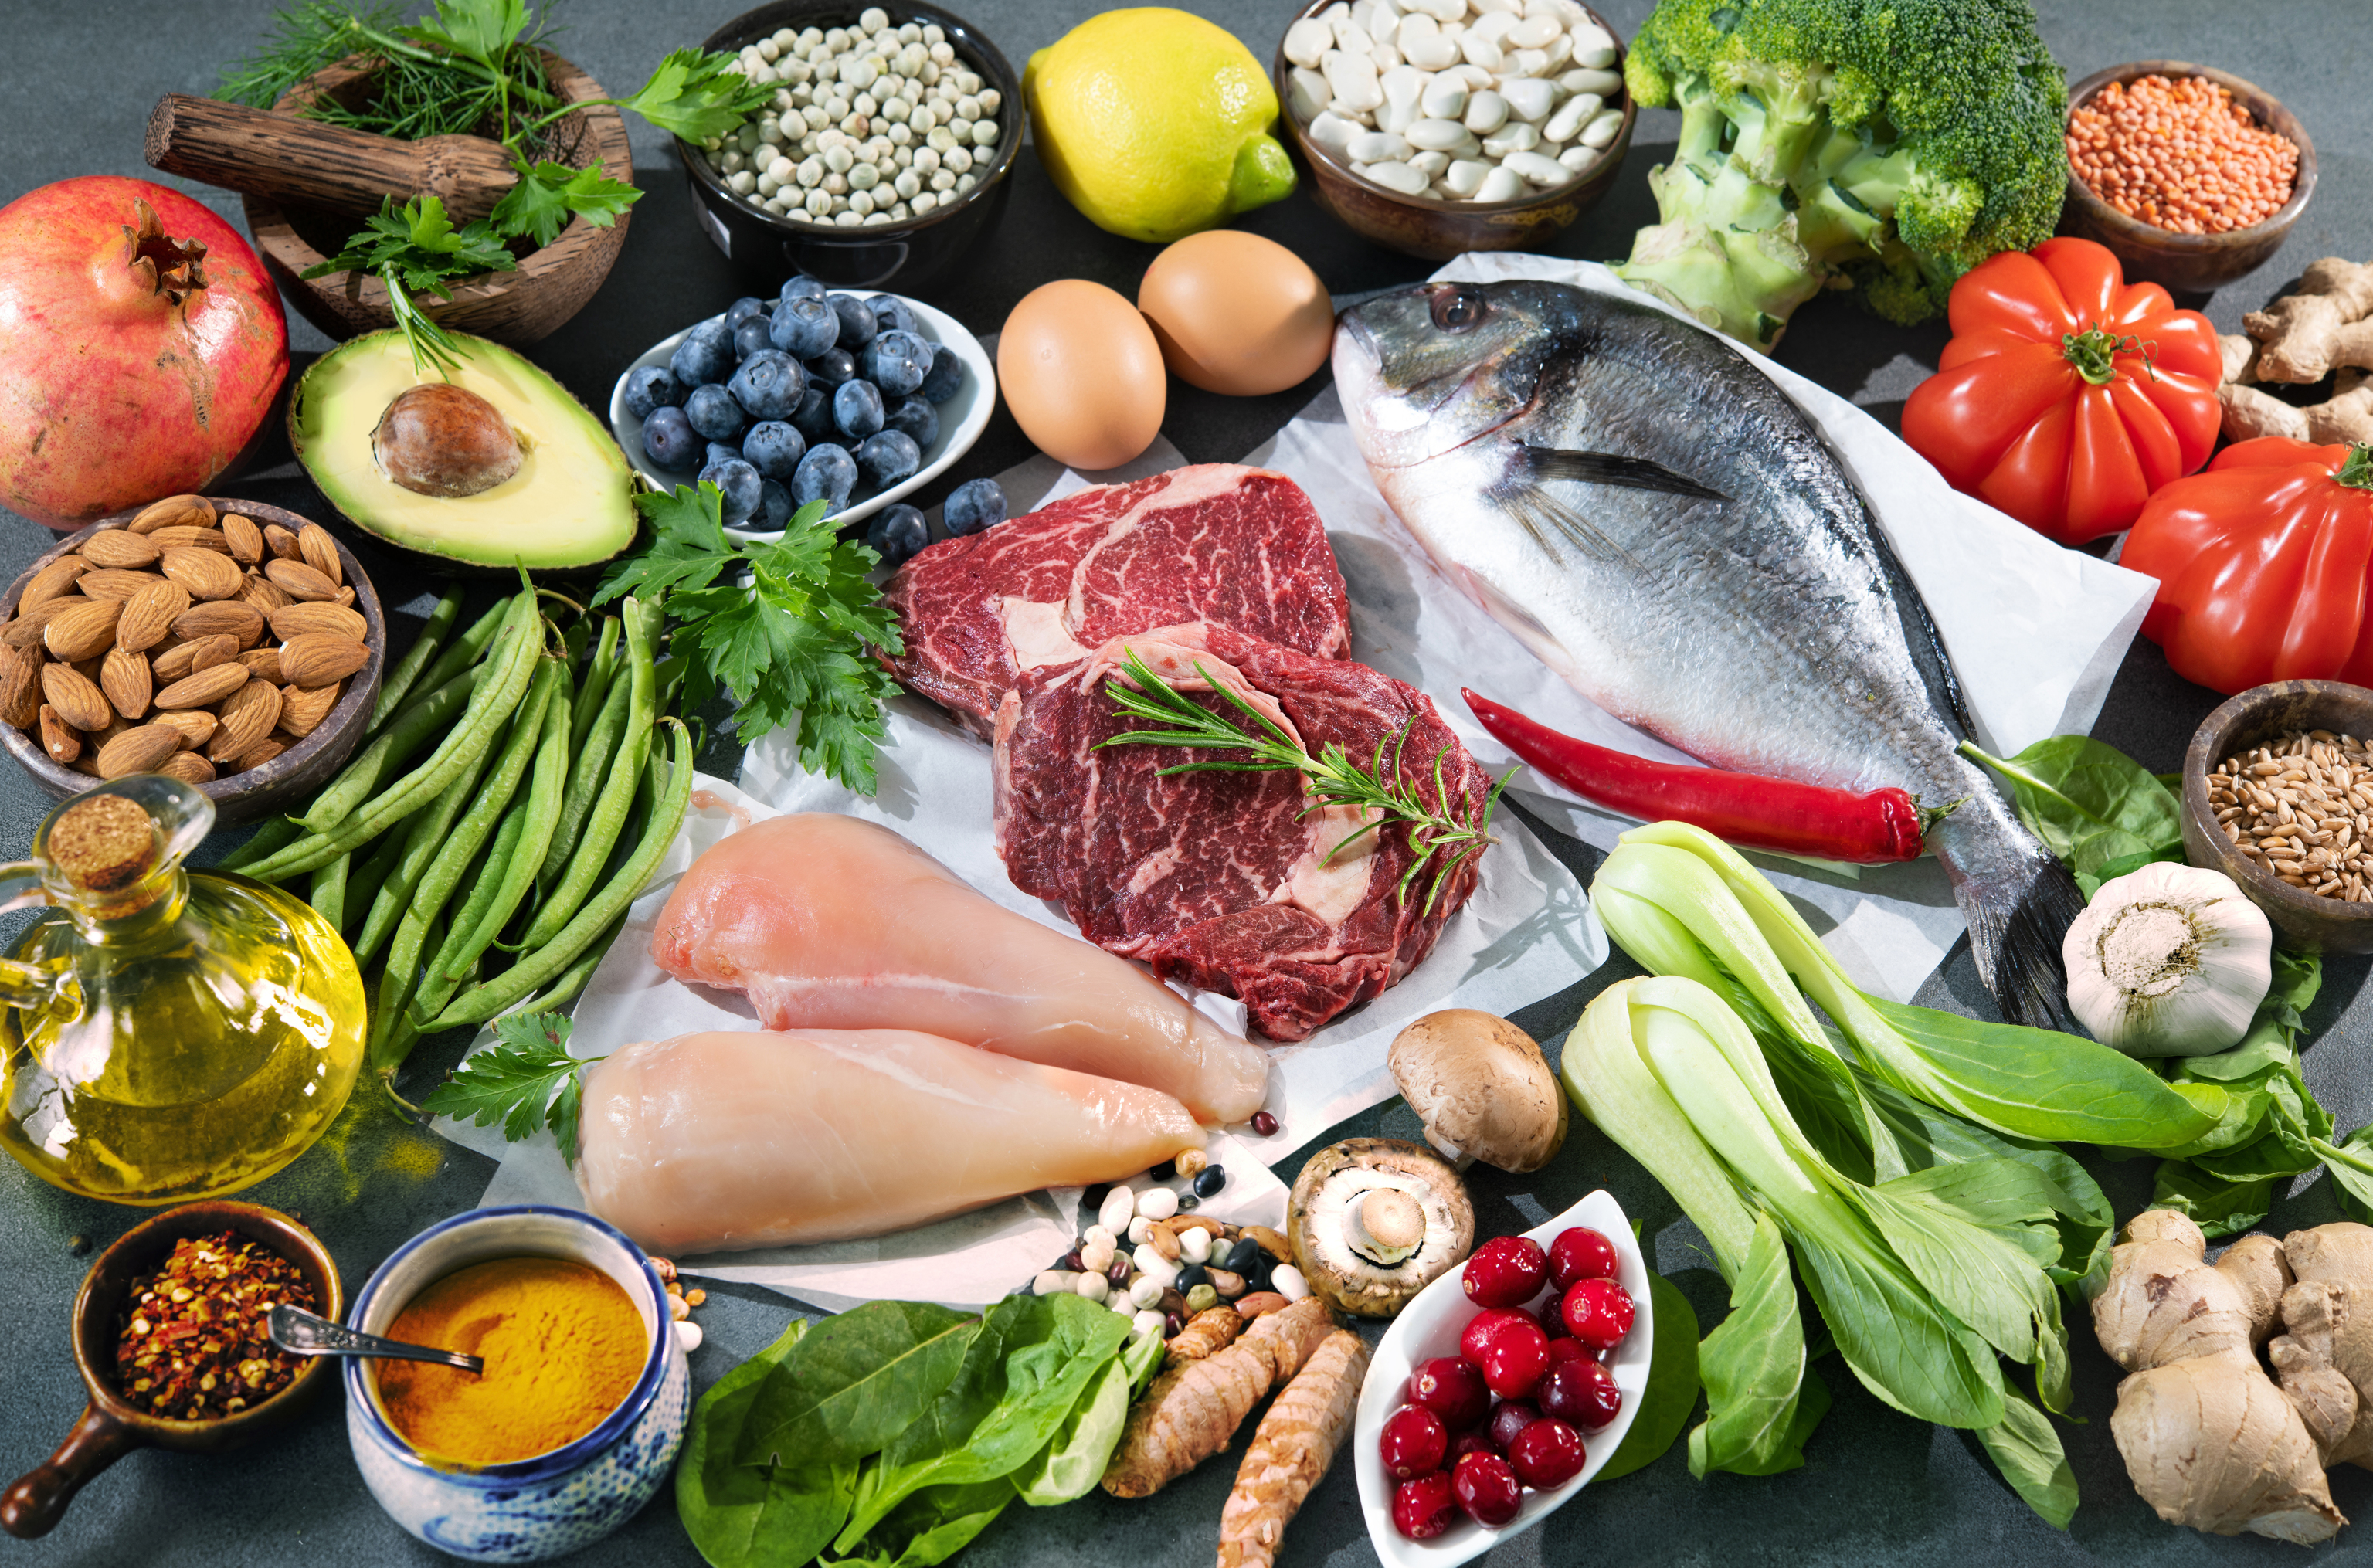 Fruta, verdura, pescado y carne son los alimentos que prima la dieta hipocalrica.